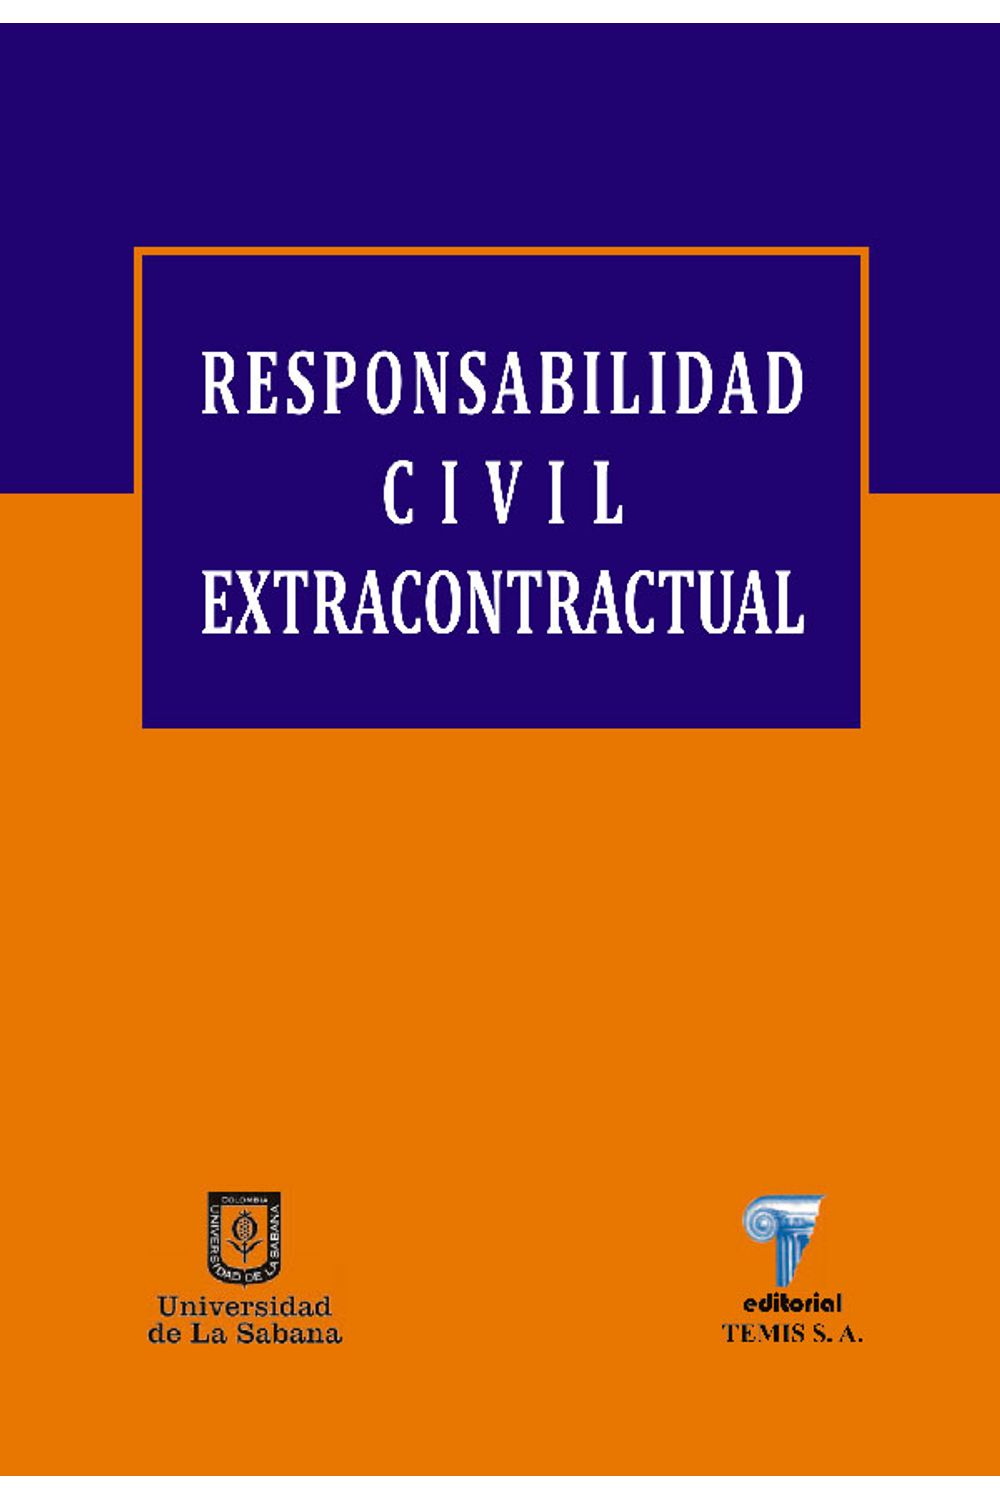 bw-responsabilidad-civil-extracontractual-u-de-la-sabana-9789581203130